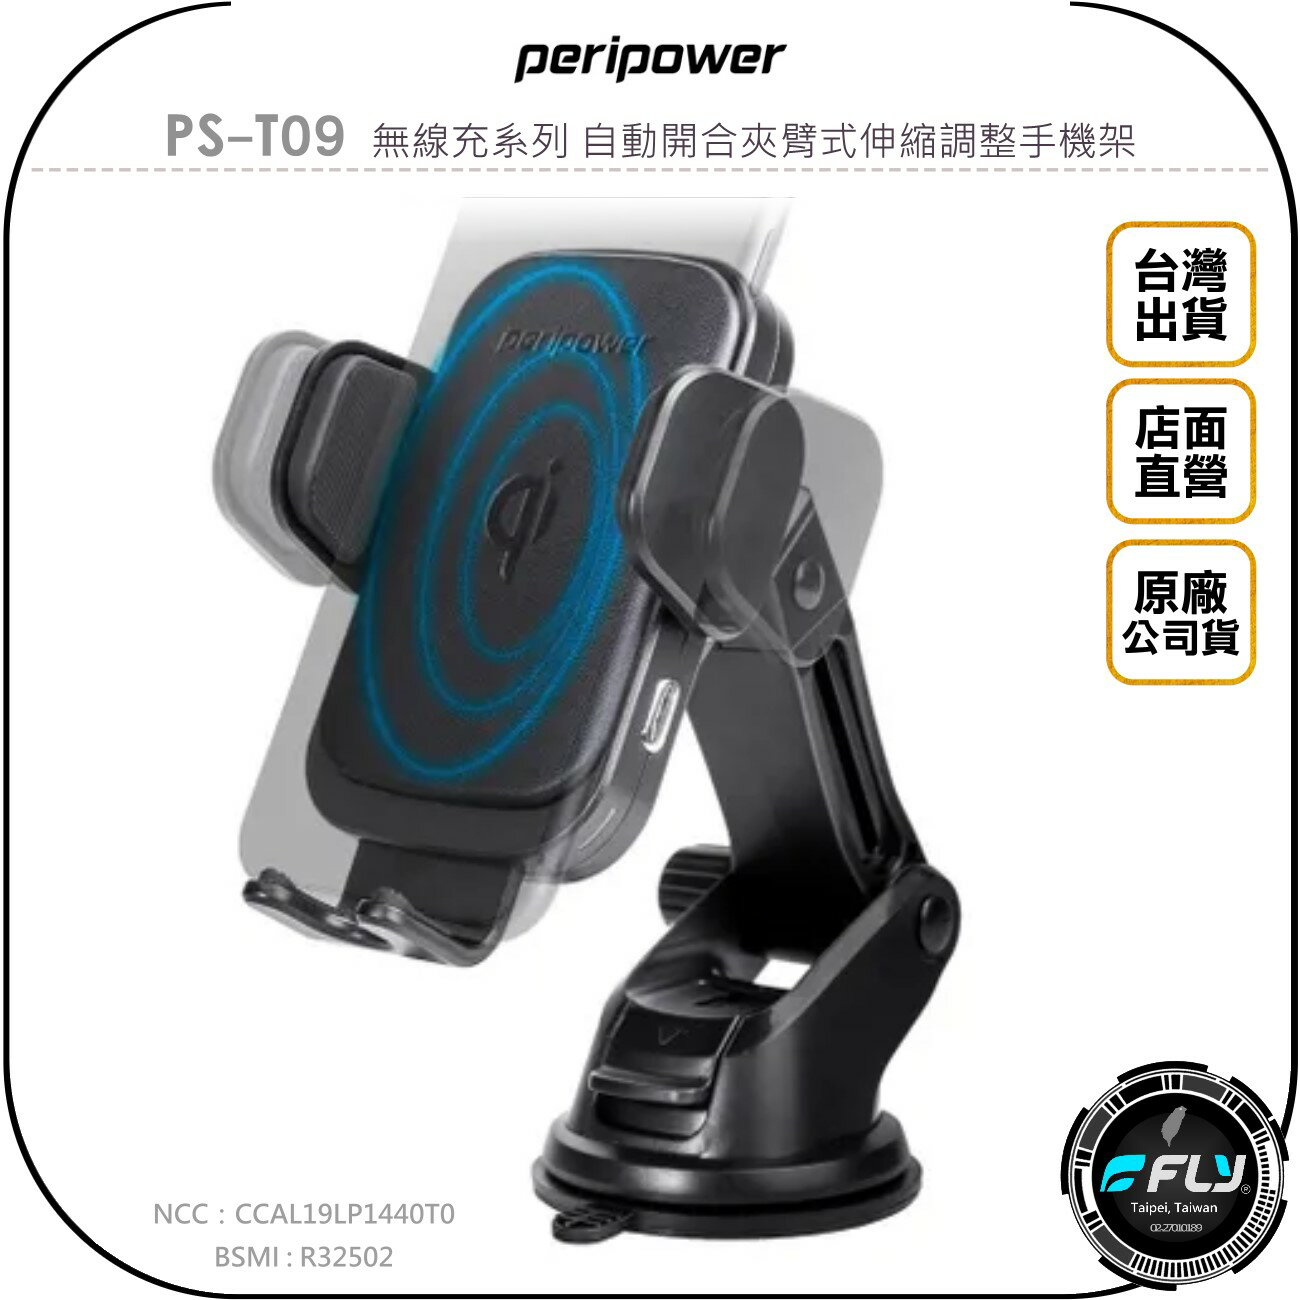 《飛翔無線3C》peripower PS-T09 無線充系列 自動開合夾臂式伸縮調整手機架◉公司貨◉吸盤手機夾◉出風口座